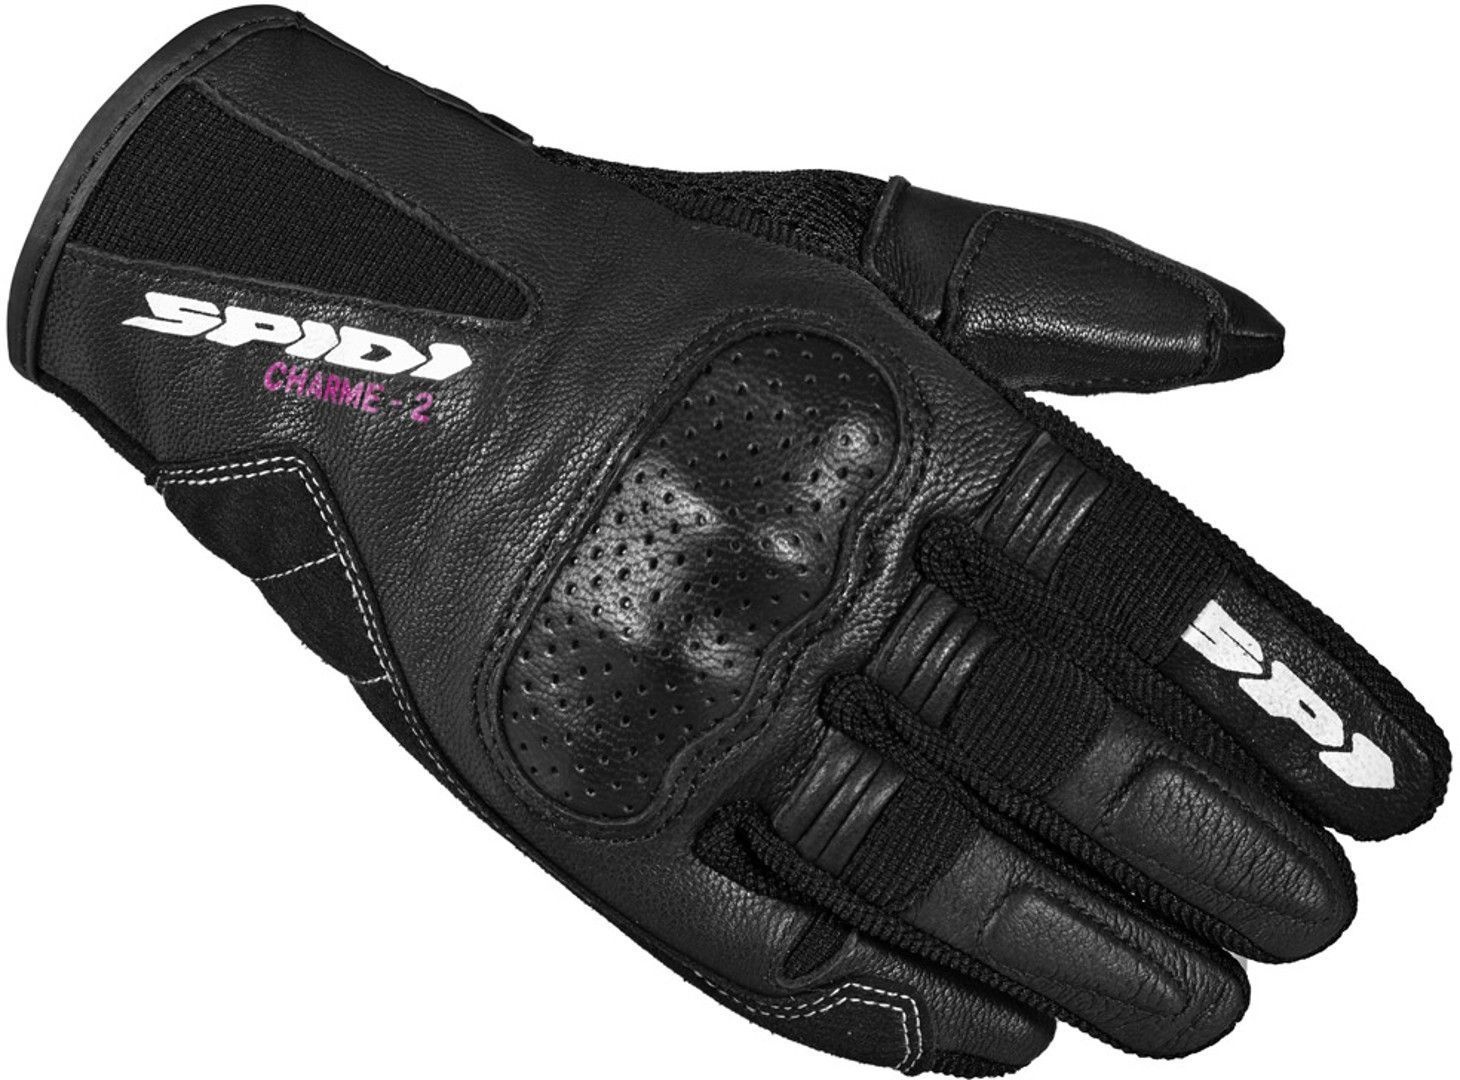 Spidi Charme 2 Damen Motorrad Handschuhe, schwarz-weiss, Größe XS